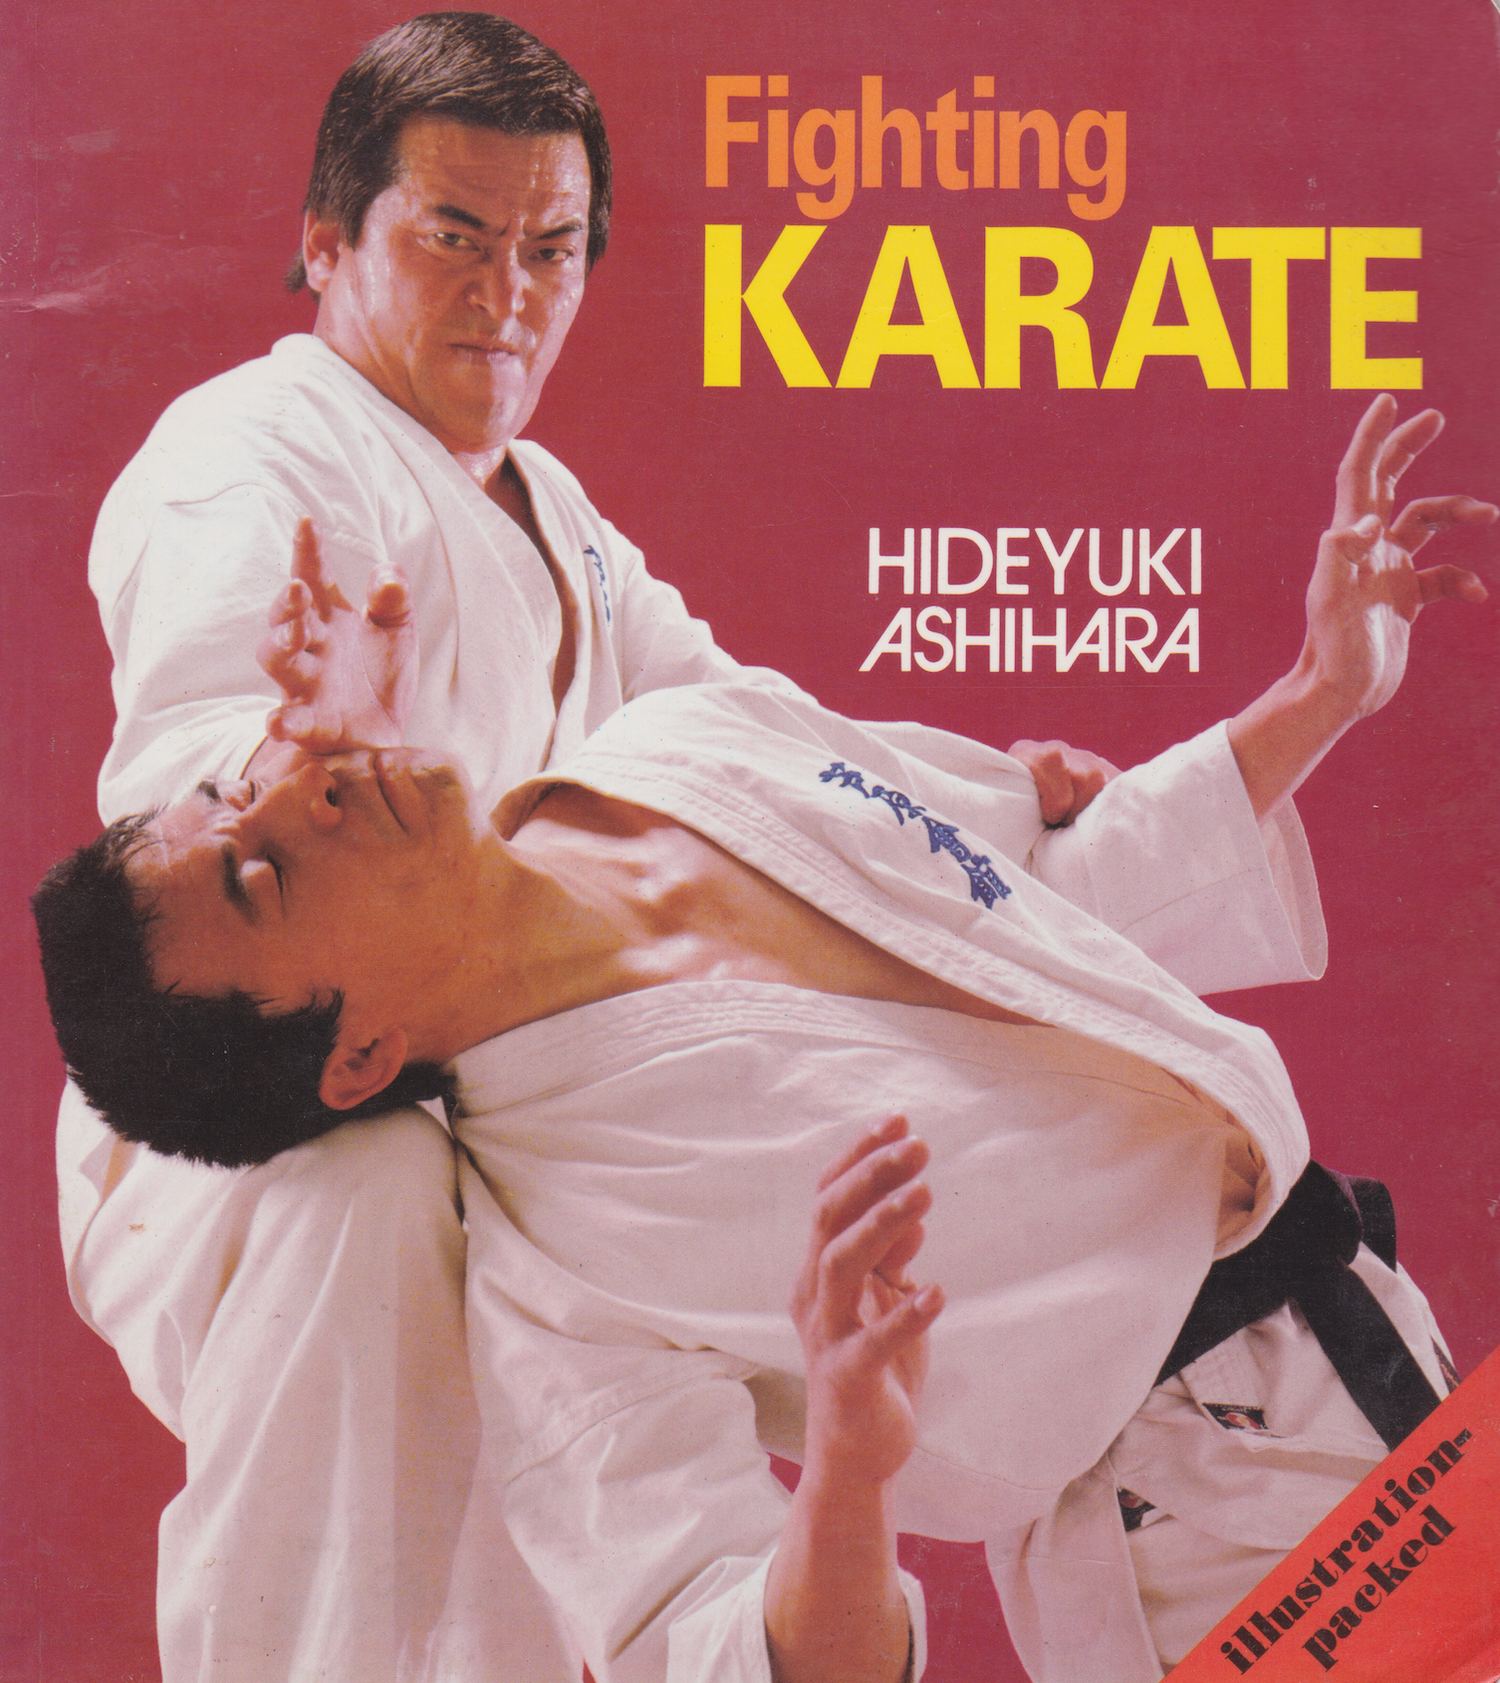 Libro de lucha de Karate de Hideyuki Ashihara (seminuevo)